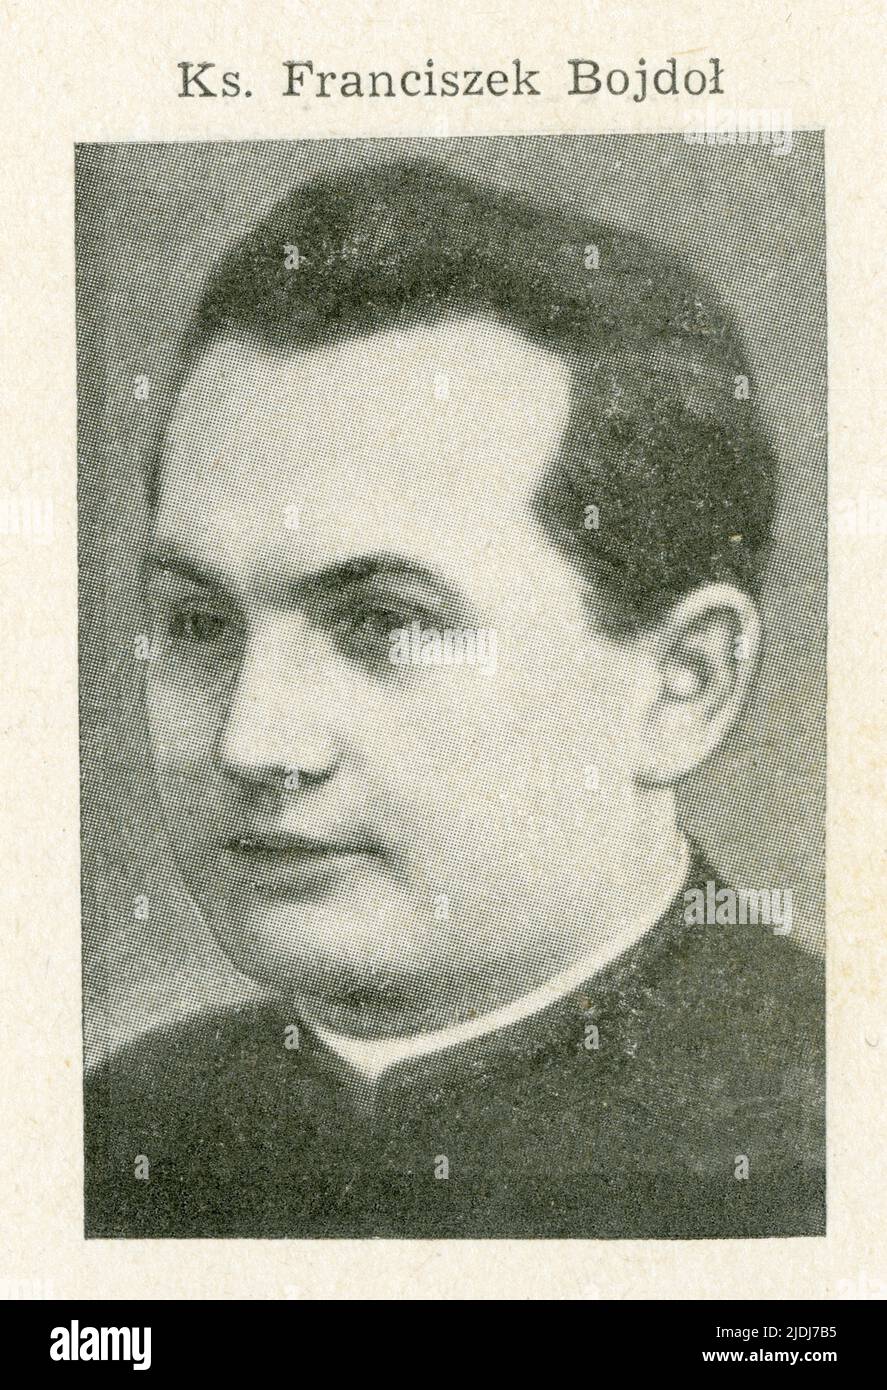 Bojdoł Franciszek (1905-1942).Urodził się 2 kwietnia 1905 w Wyrach w rodzinie robotnika Teodora i Marty z d. Żogała. W 1910 roku zmarł mu ojciec, a w Stock Photo